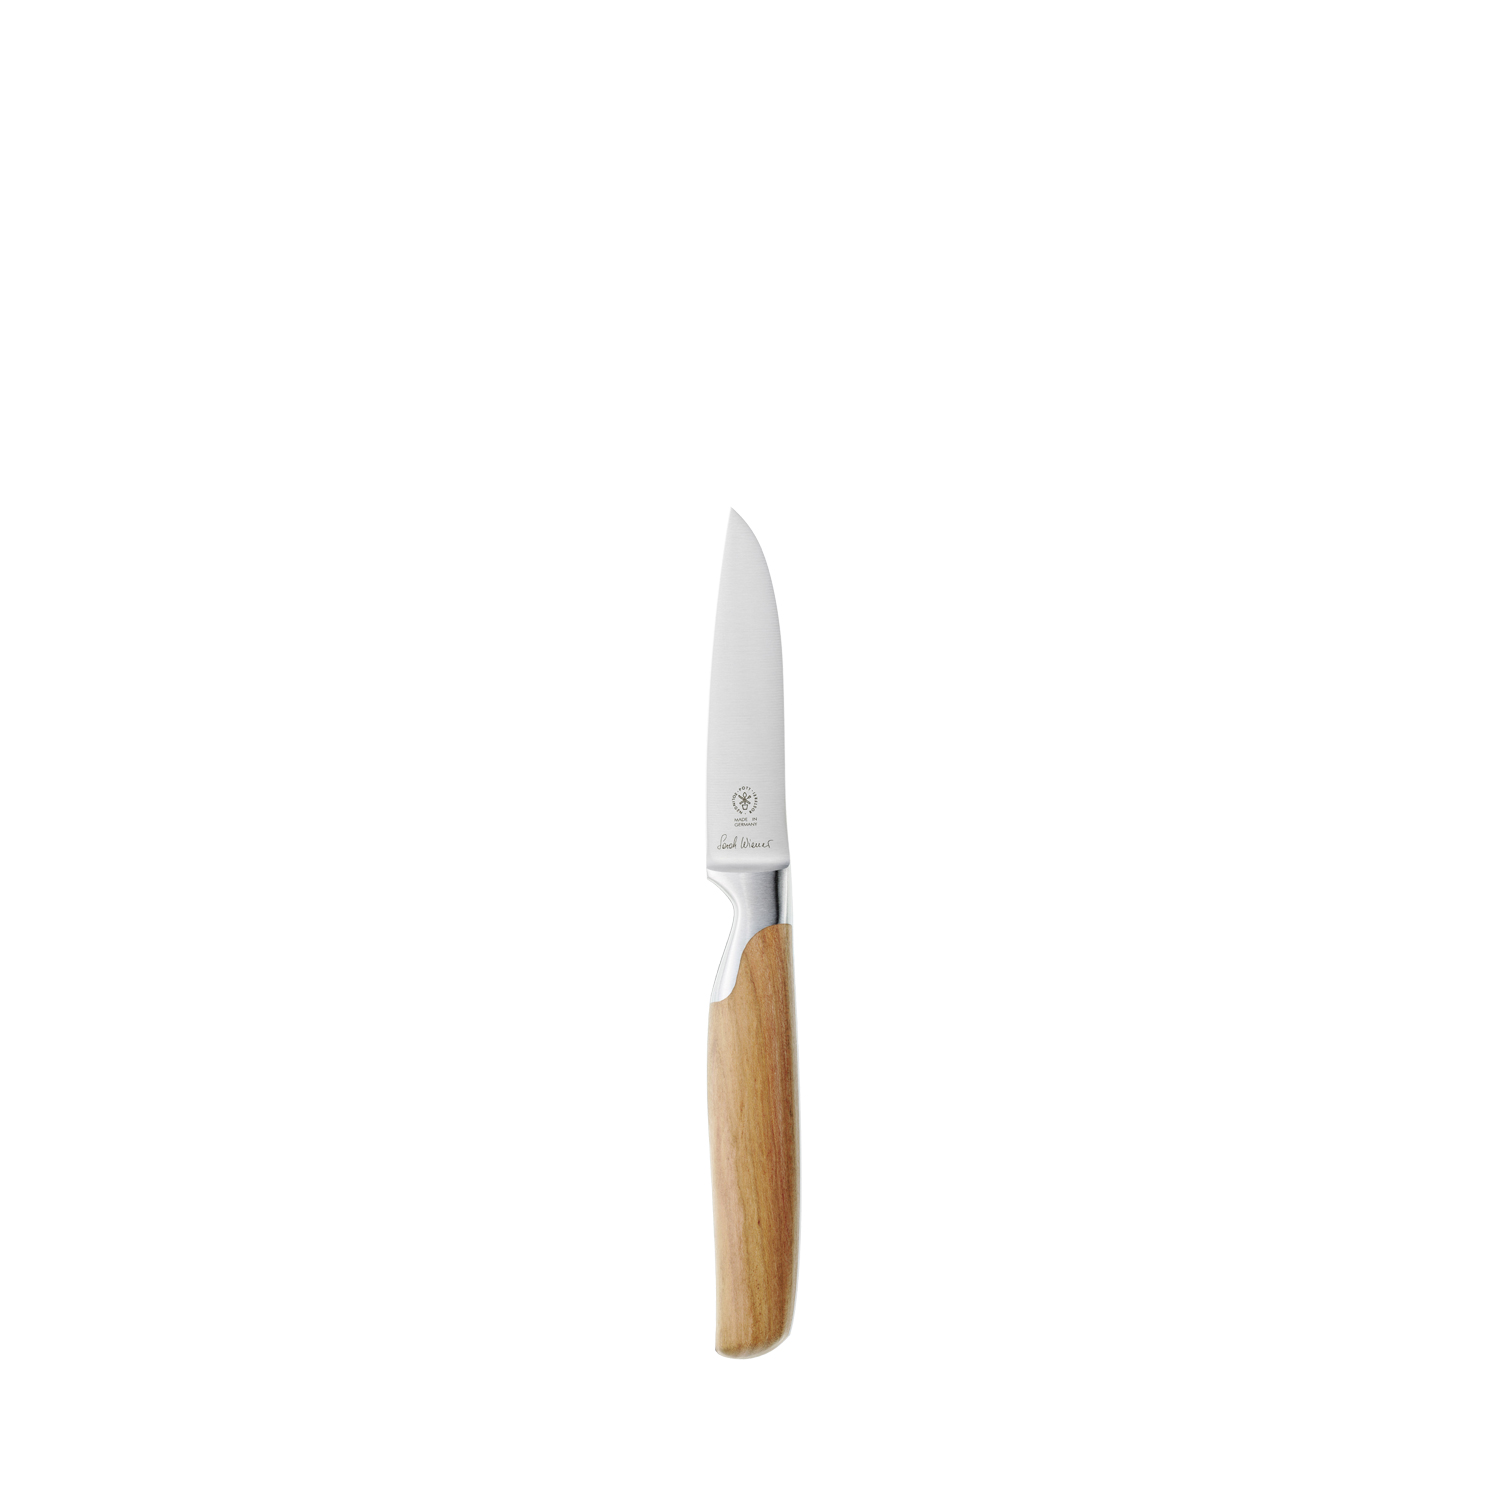 2810 146 Pott Sarah Wiener Messer Knives